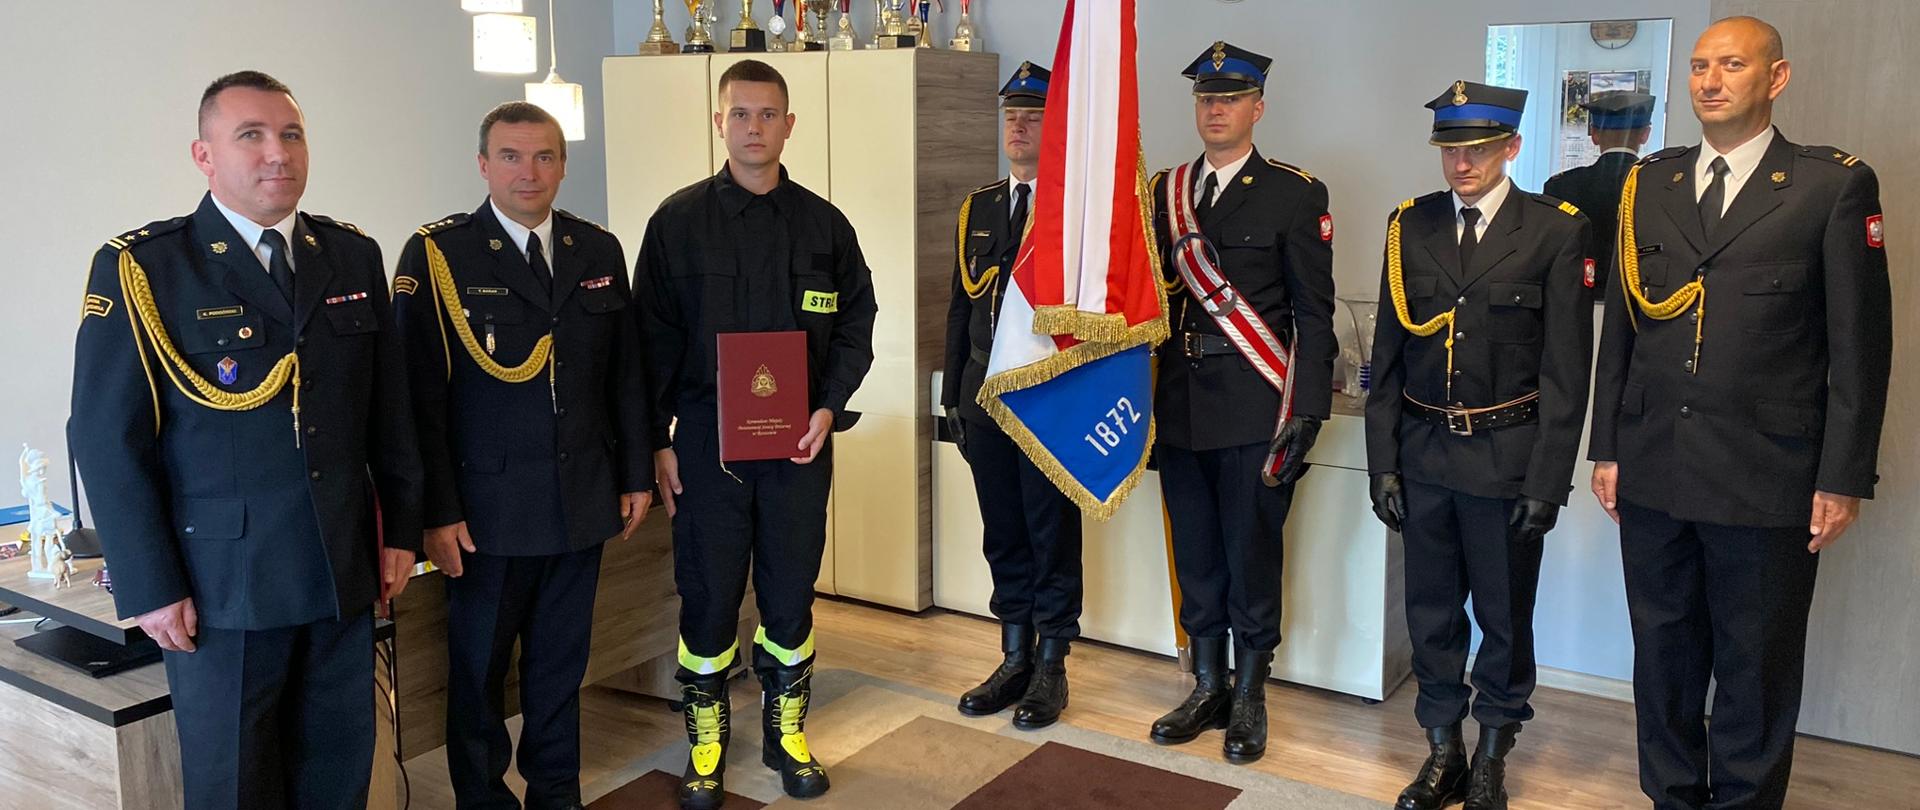 Zdjęcie przedstawia nowo przyjętego strażaka z reprezentacją Komendy Miejskiej Państwowej Straży Pożarnej w Rzeszowie, komendantem miejskim Państwowej Straży Pożarnej w Rzeszowie oraz pocztem sztandarowym w gabinecie komendanta miejskiego PSP w Rzeszowie. Wszystkie osoby przyjęły w postawę zasadniczą. 